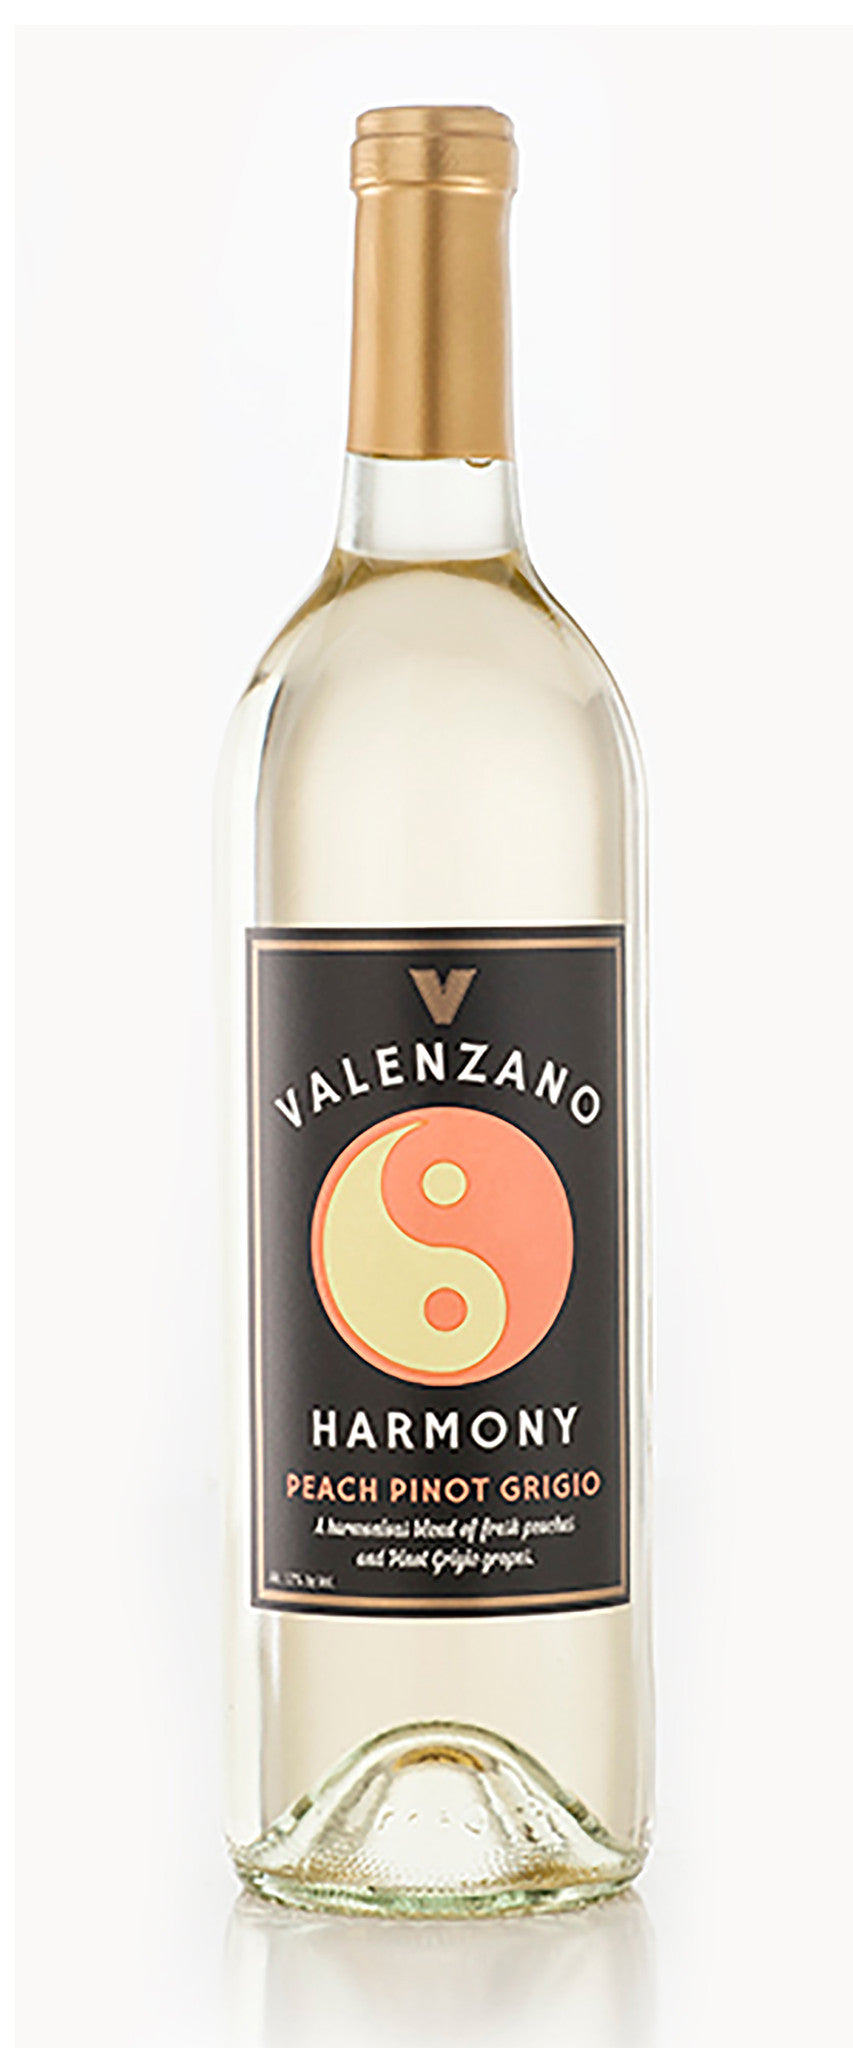 Valenzano Harmony Peach Pinot Grigio